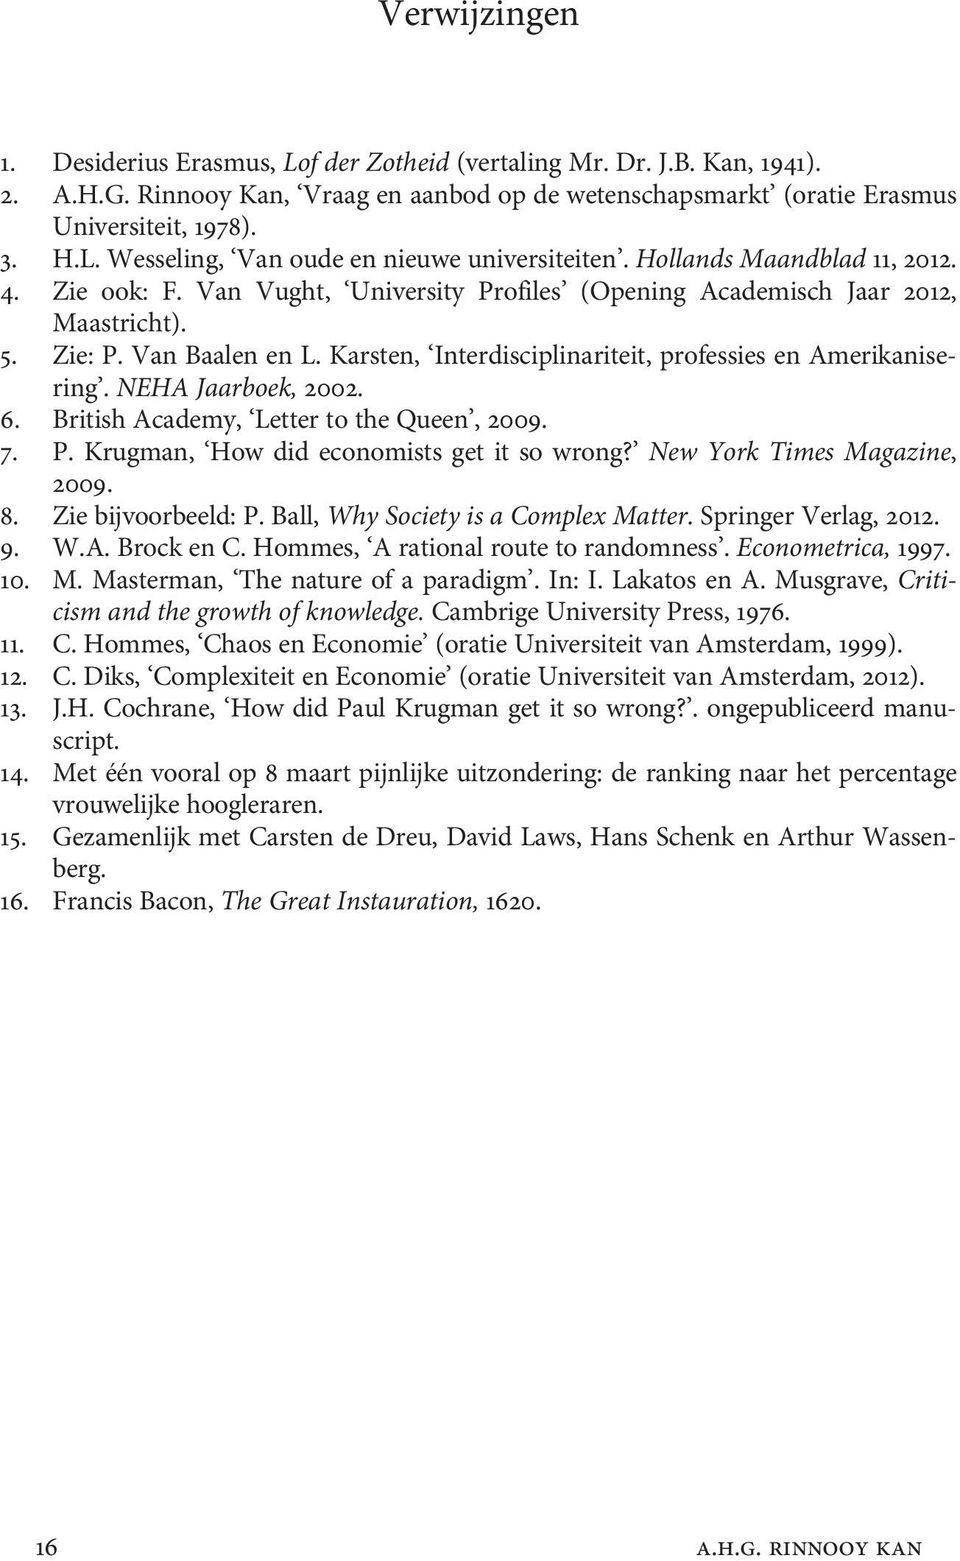 Karsten, Interdisciplinariteit, professies en Amerikanisering. NEHA Jaarboek, 2002. 6. British Academy, Letter to the Queen, 2009. 7. P. Krugman, How did economists get it so wrong?